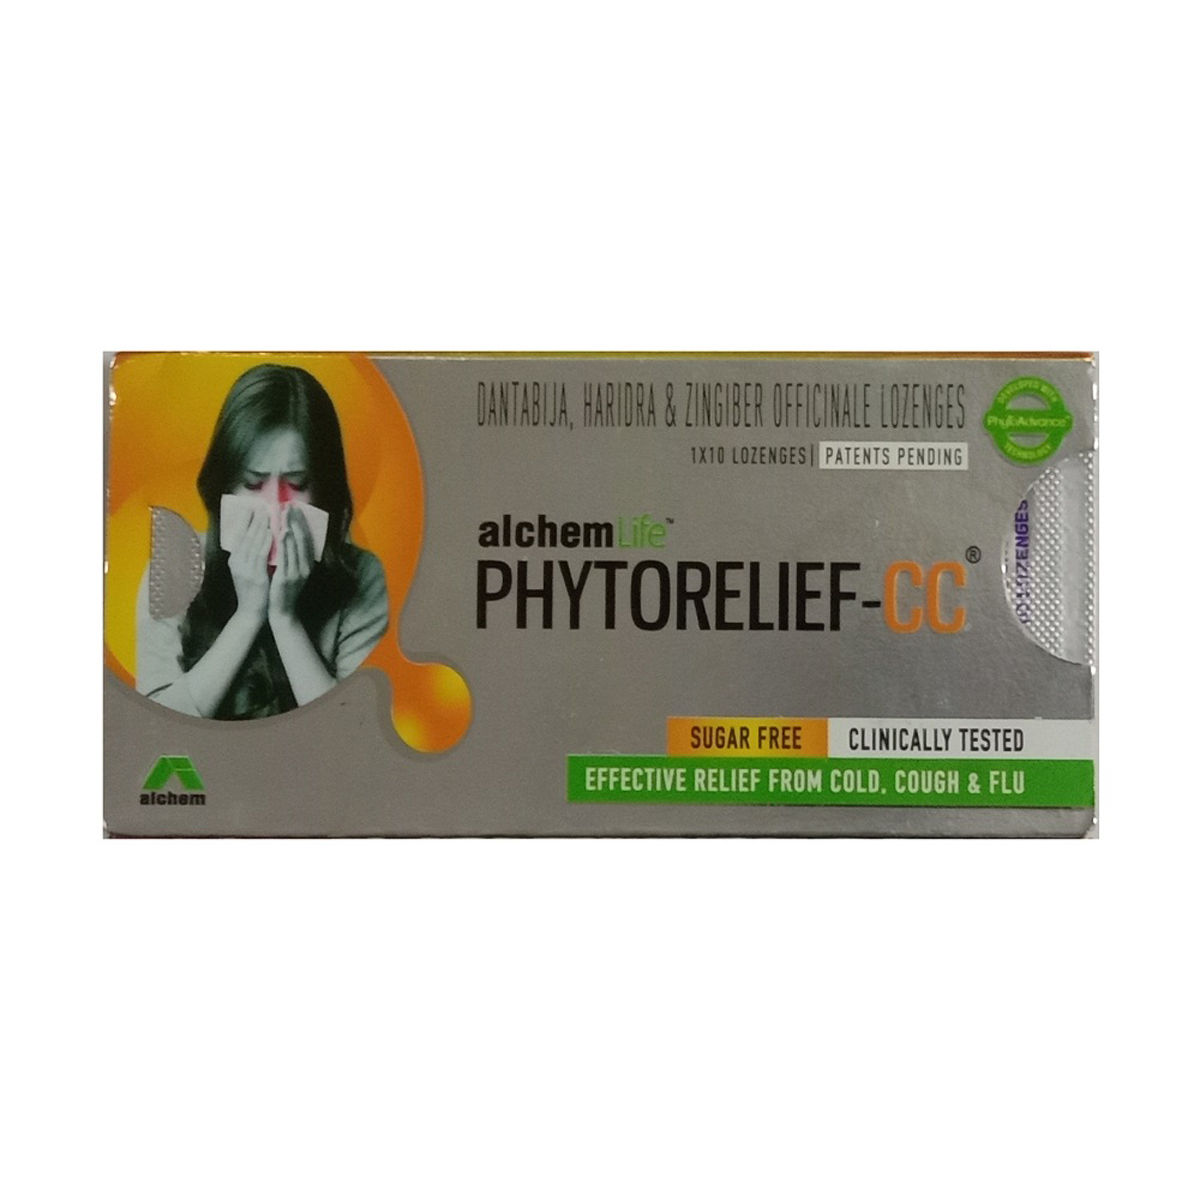 Buy Phytorelief-CC Sugar Free, 10 Lozenges Online